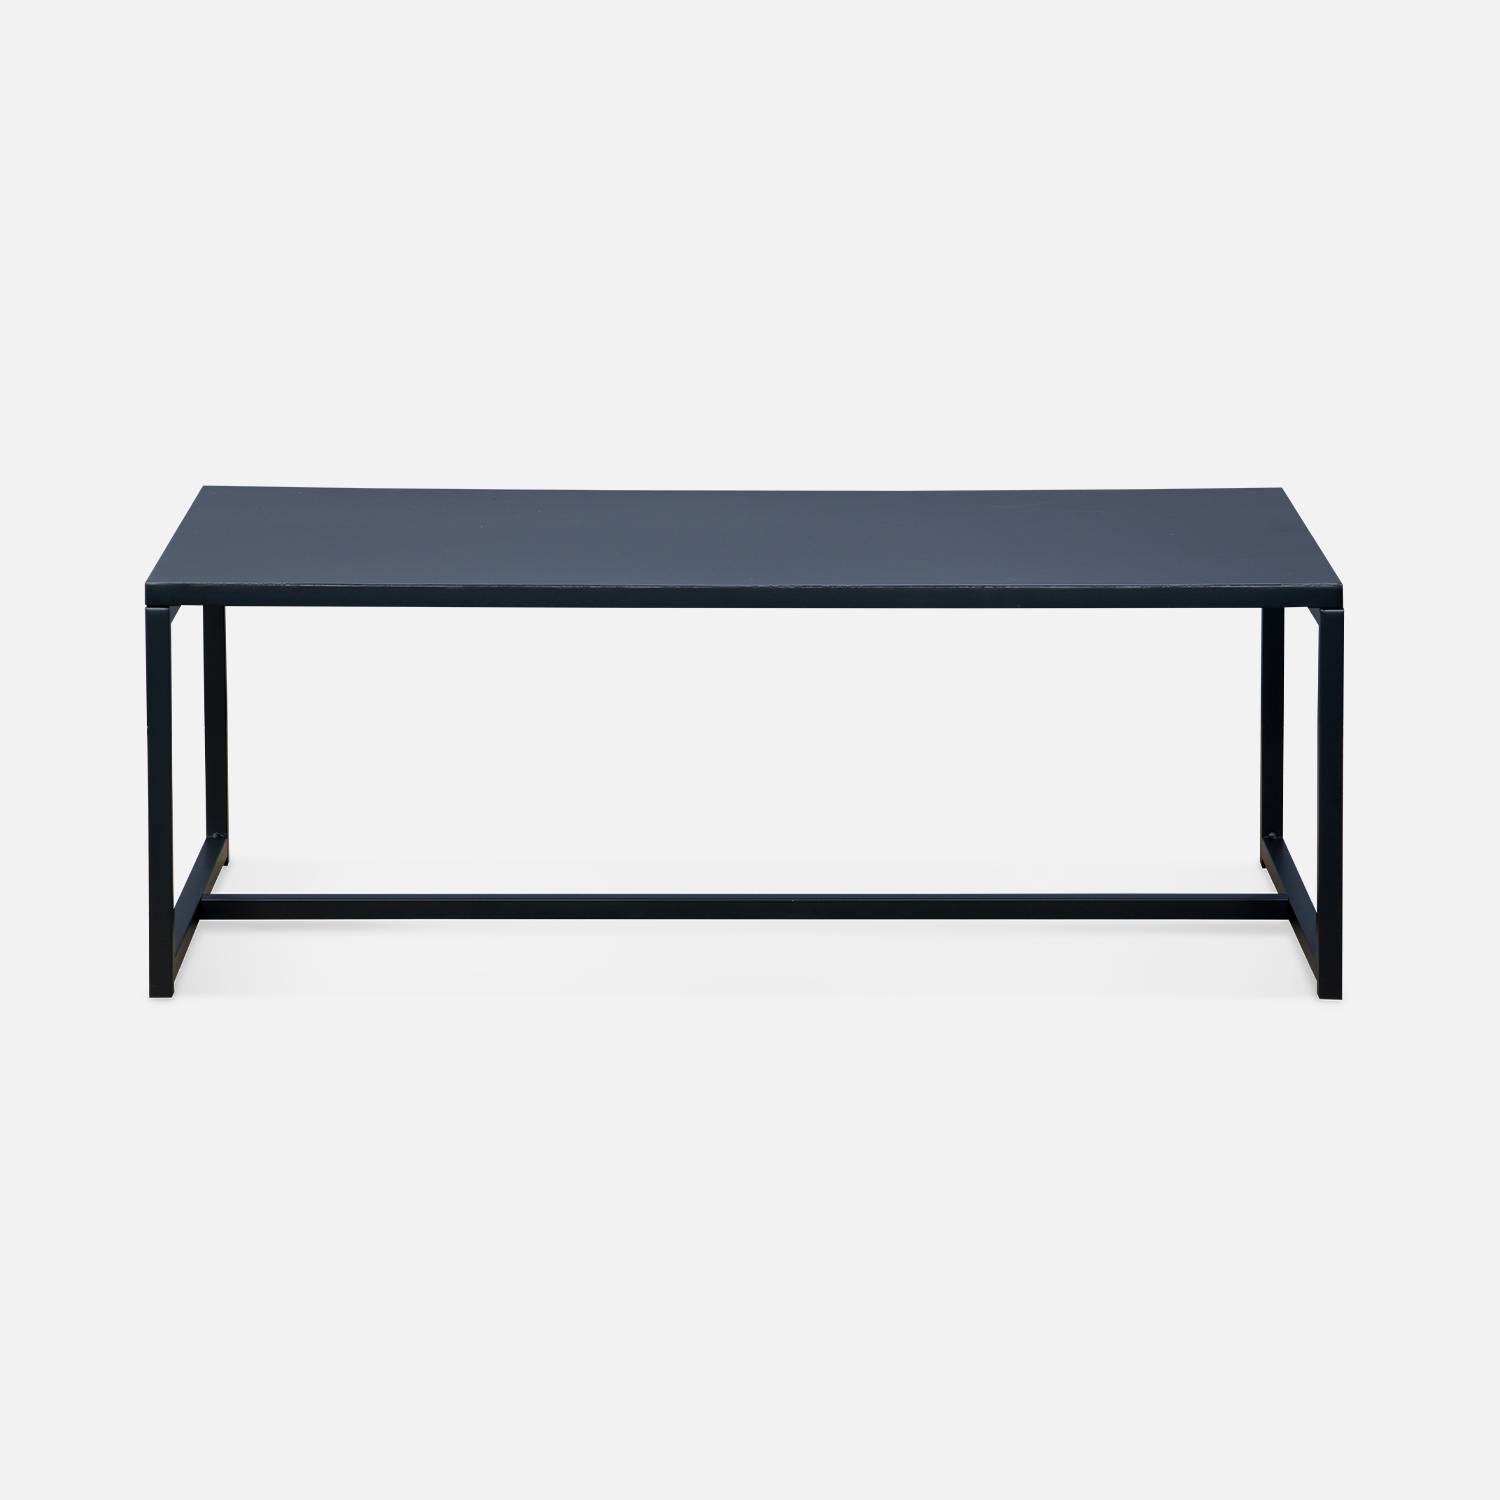 Black metal coffee table 100x50x36cm - Industrial - metal legs, design,sweeek,Photo4